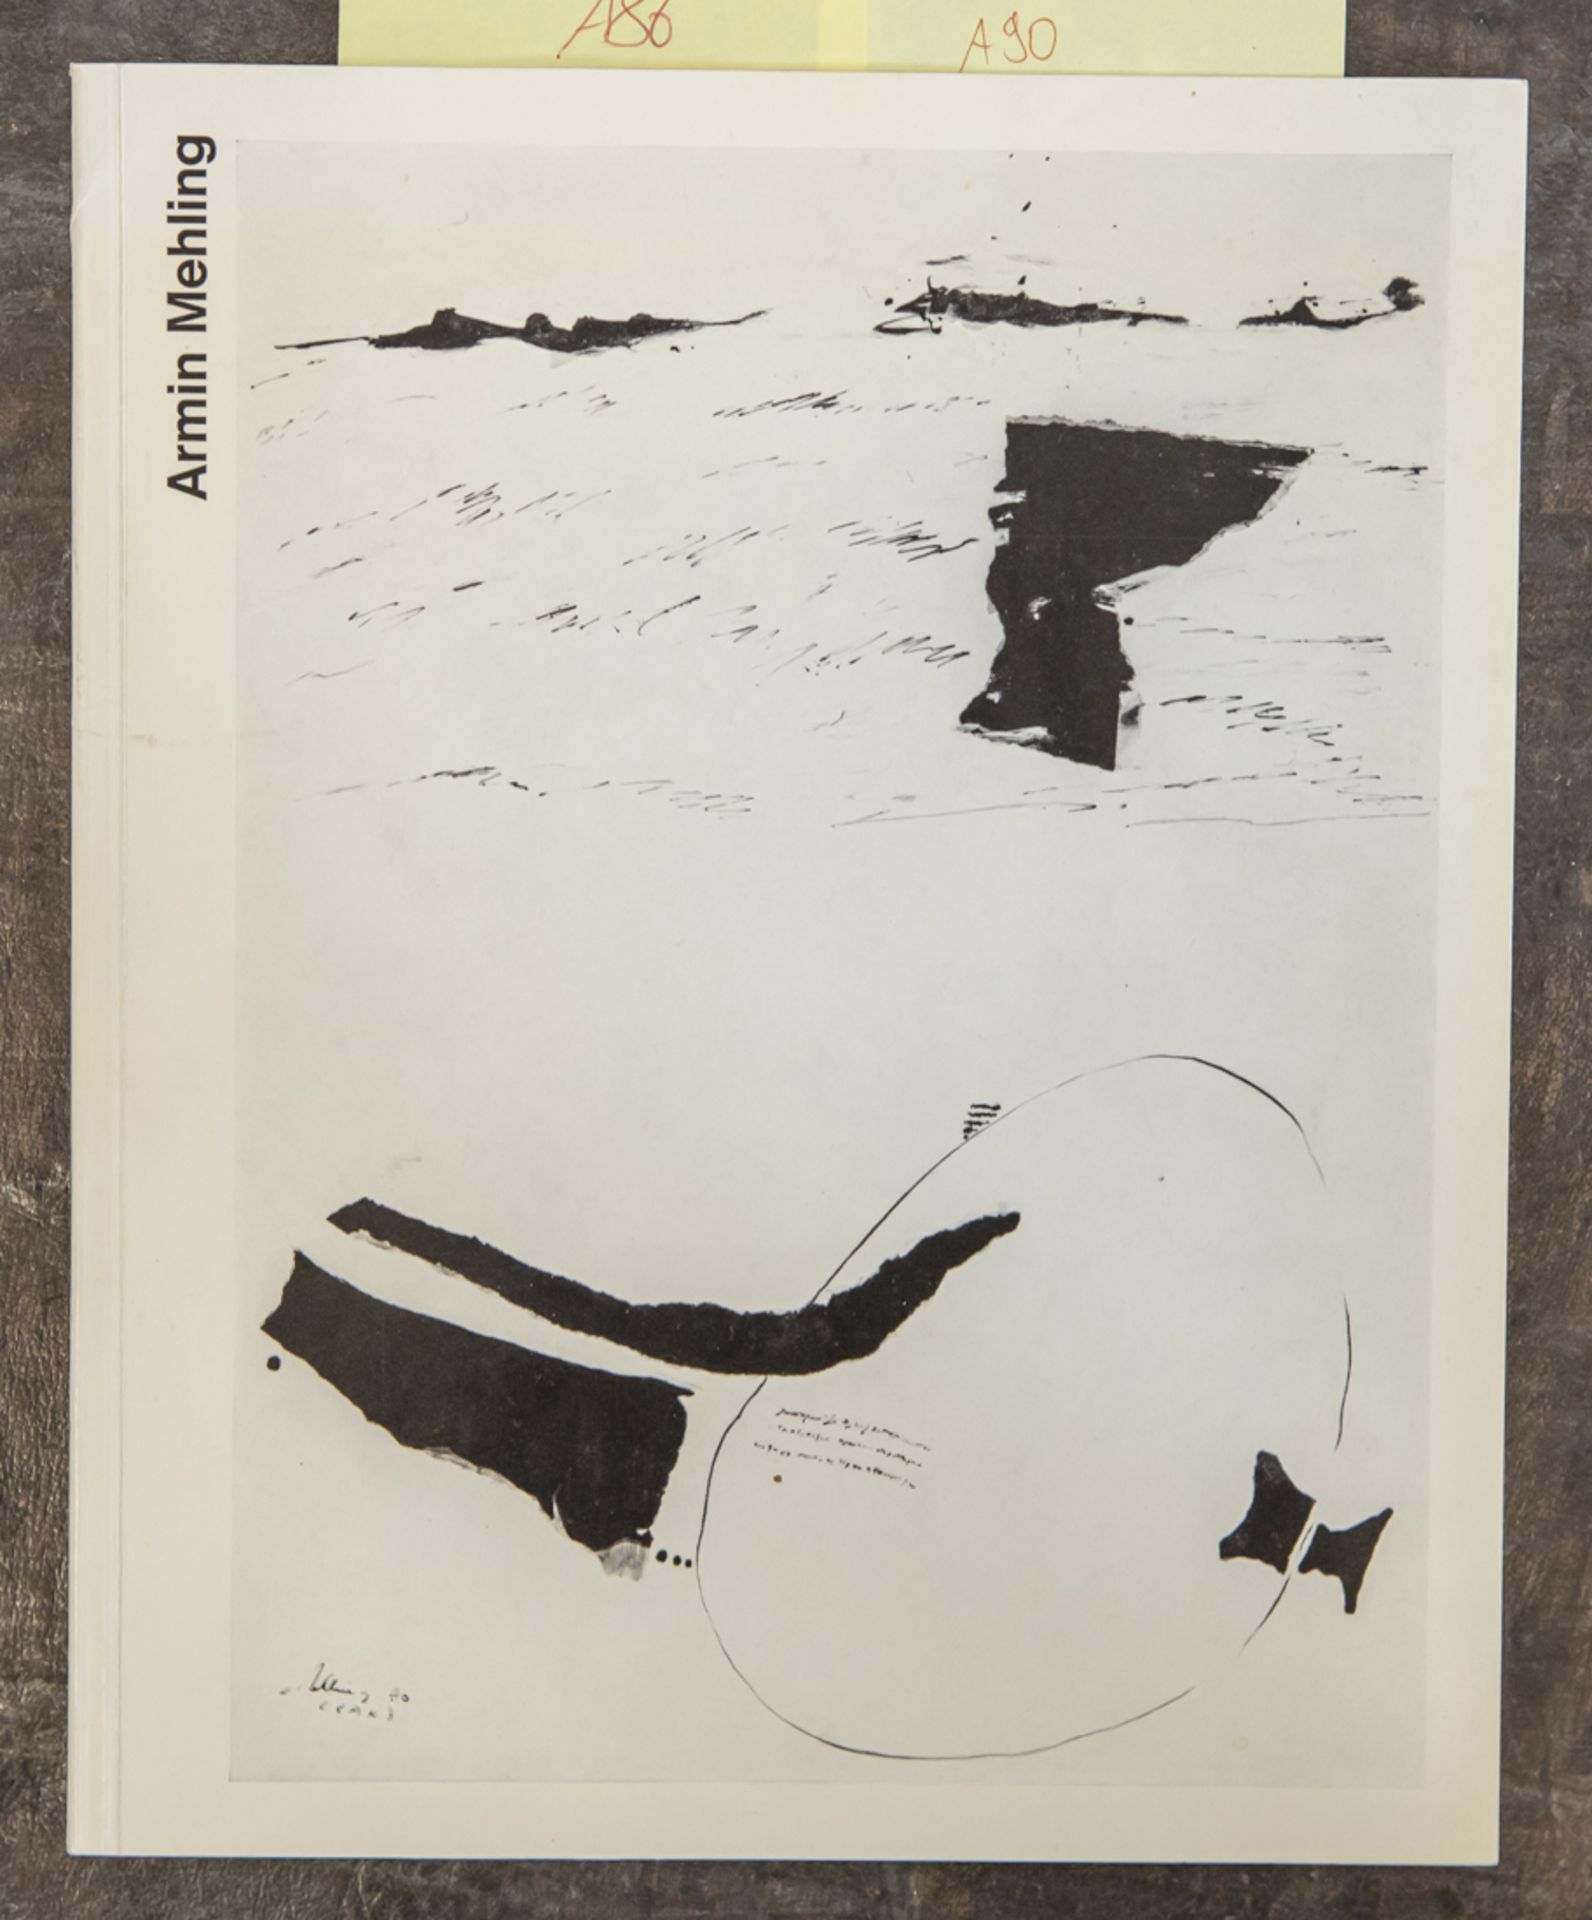 Mehling, Armin, Werkverzeichnis, Bochum 1971, mit persönlicher Widmung des Künstlers,Herstellung